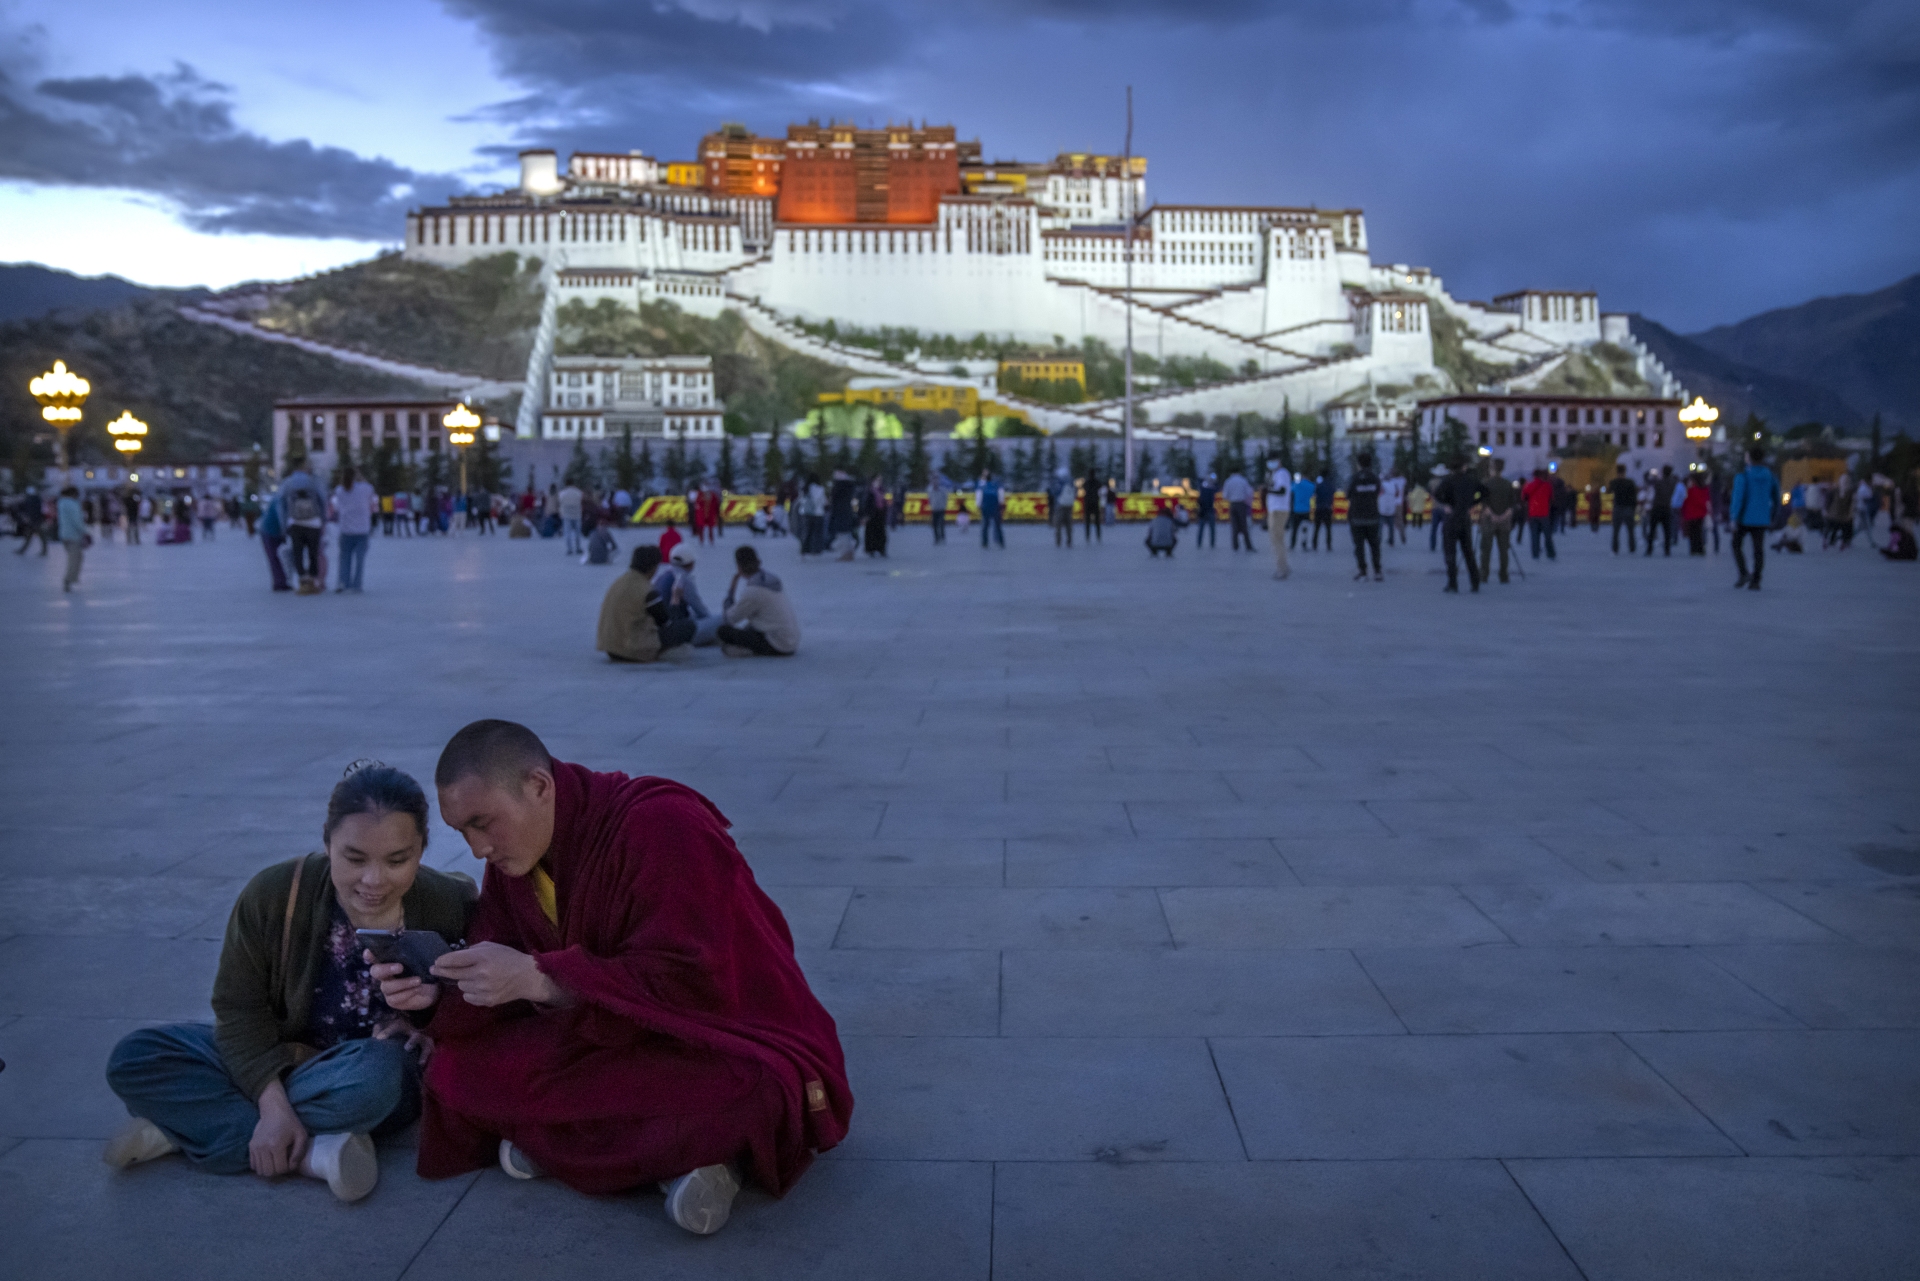 Devant le palais du Potala à Lhassa, dans la région autonome du Tibet (ouest de la Chine), lors d’une visite organisée par le gouvernement pour les journalistes étrangers, mardi 1er juin 2021.